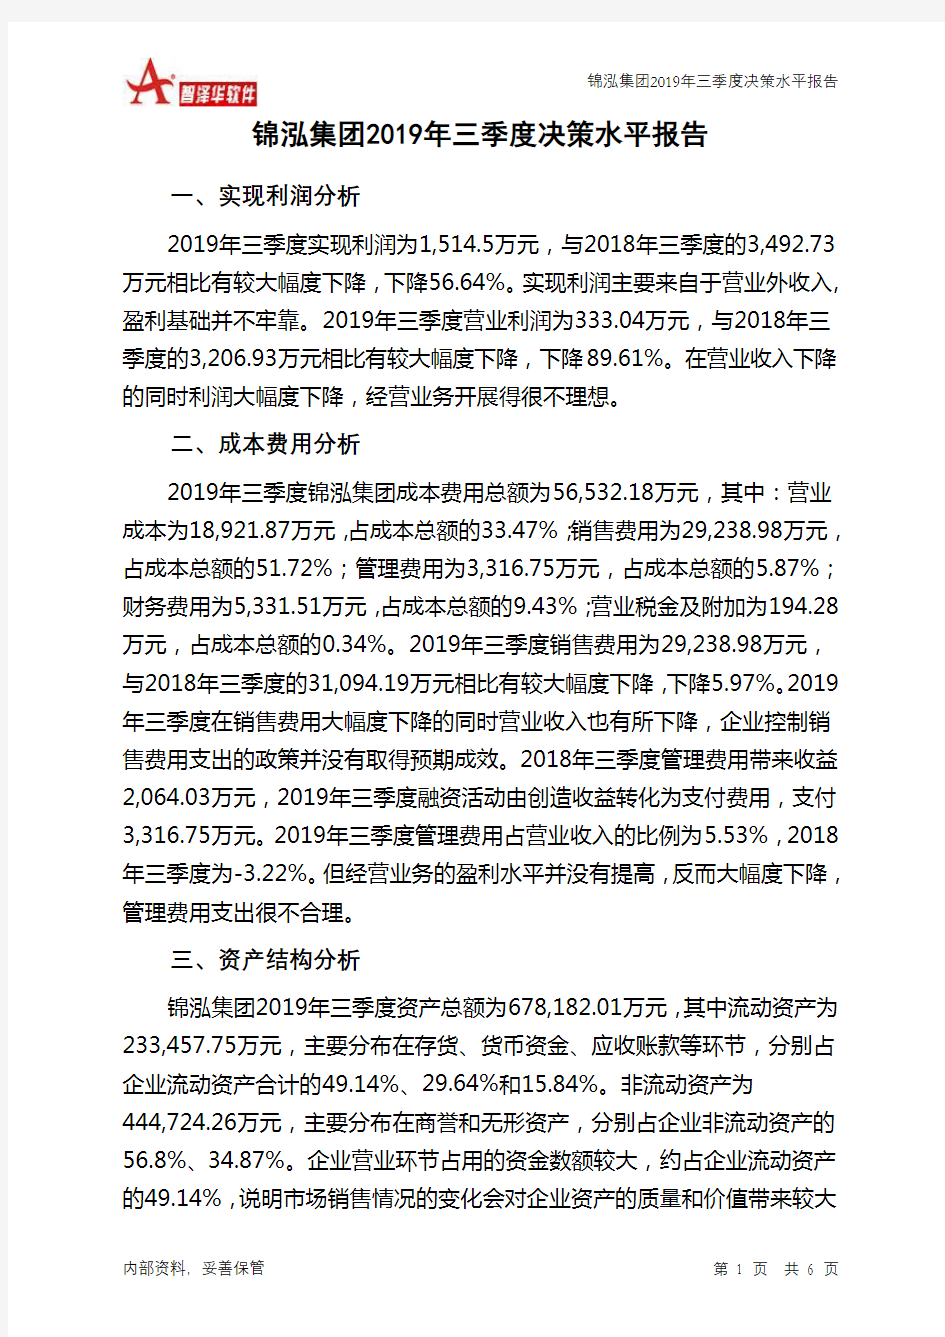 锦泓集团2019年三季度决策水平分析报告